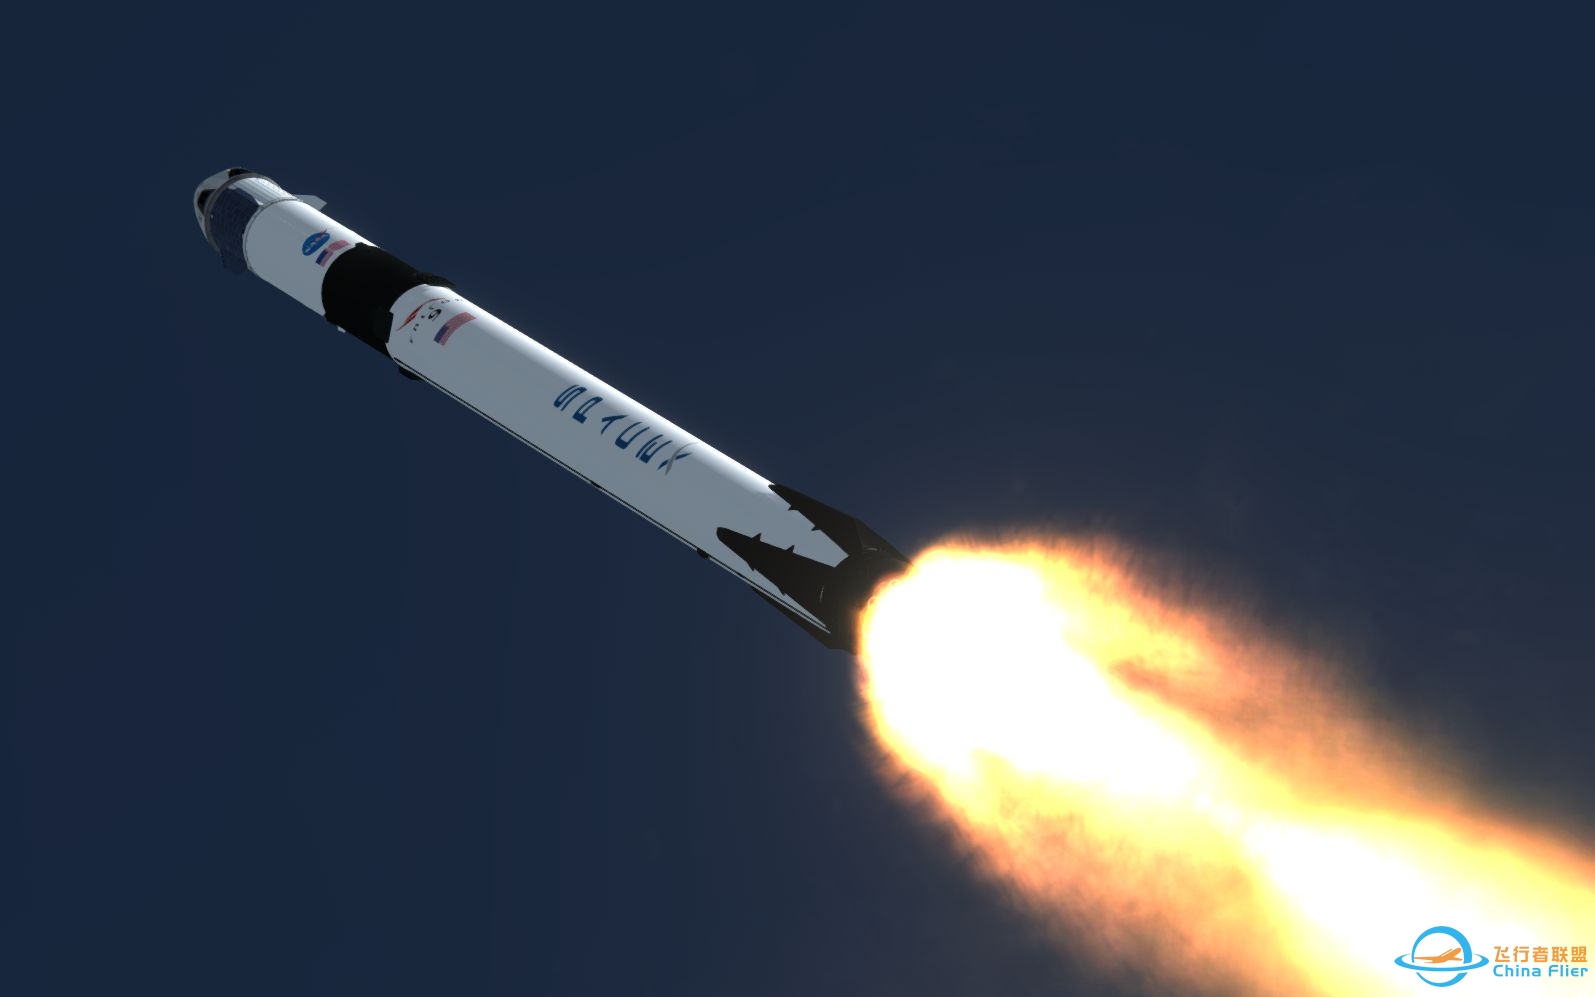 【坎巴拉太空计划】SpaceX 龙飞船载人首飞模拟-4054 